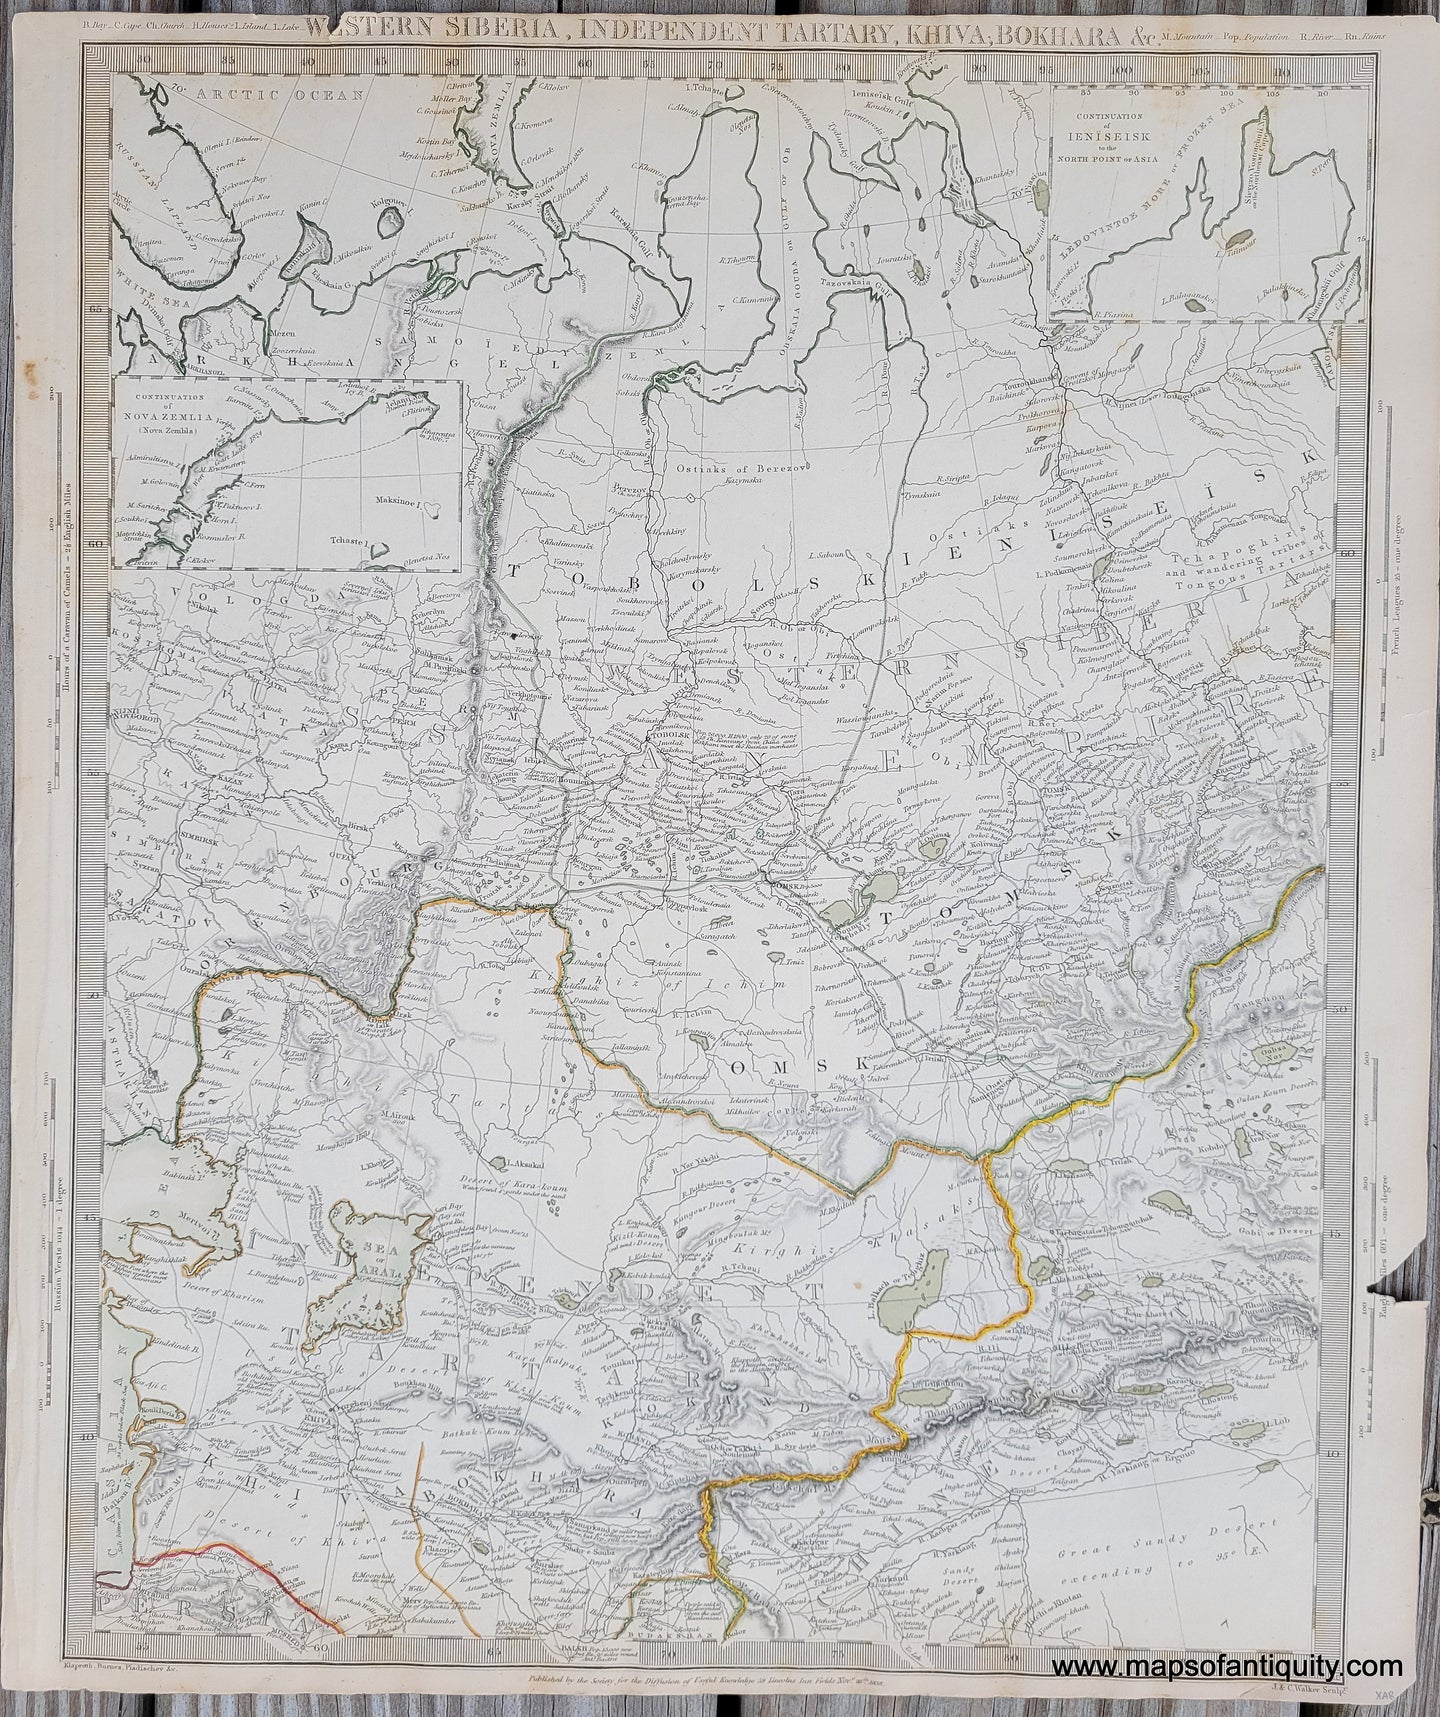 Antique-Map-Western-Siberia-Independent-Tartary-Khiva-Bokhara-etc.